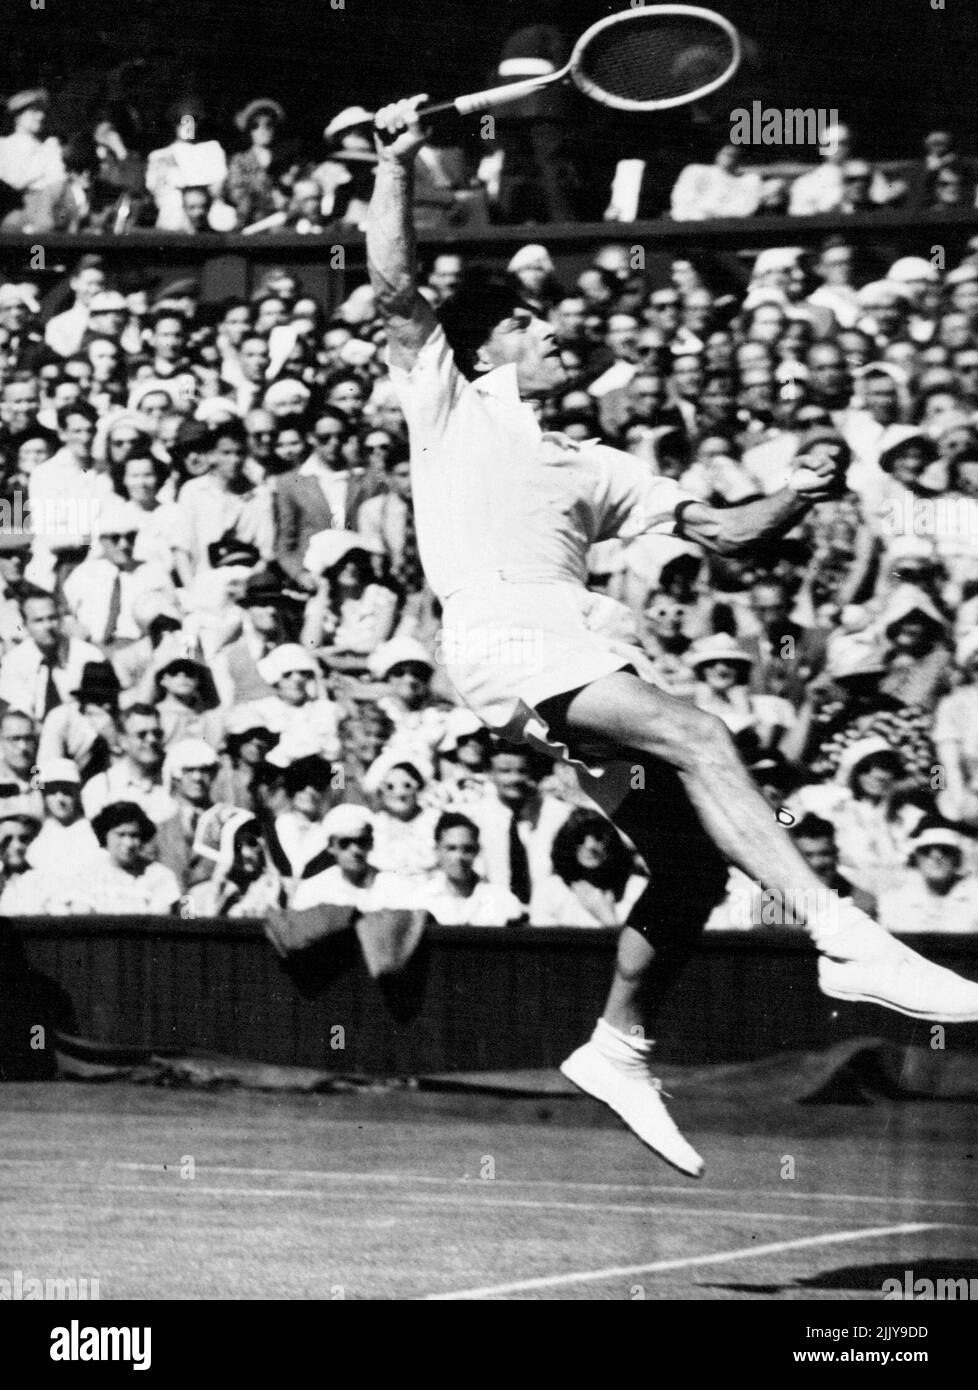 Mais il espère encore gagner - Tony Mottram, joueur de tennis sur gazon no 1 en Grande-Bretagne, avec les deux pieds au-dessus du sol, ***** Retour d'une superbe photo de G. E. Brown, l'australien ambudextrant, lors de leur match de tennis du Centre aux championnats de tennis de Wimbledon. Malgré son jeu brillant Tony a perdu le match 1-6,6-2,5-7,6-4, 6-3 - mais il est toujours en course pour le titre de singles hommes. 30 juin 1950. (Photo de Paul Popper Ltd.). Banque D'Images